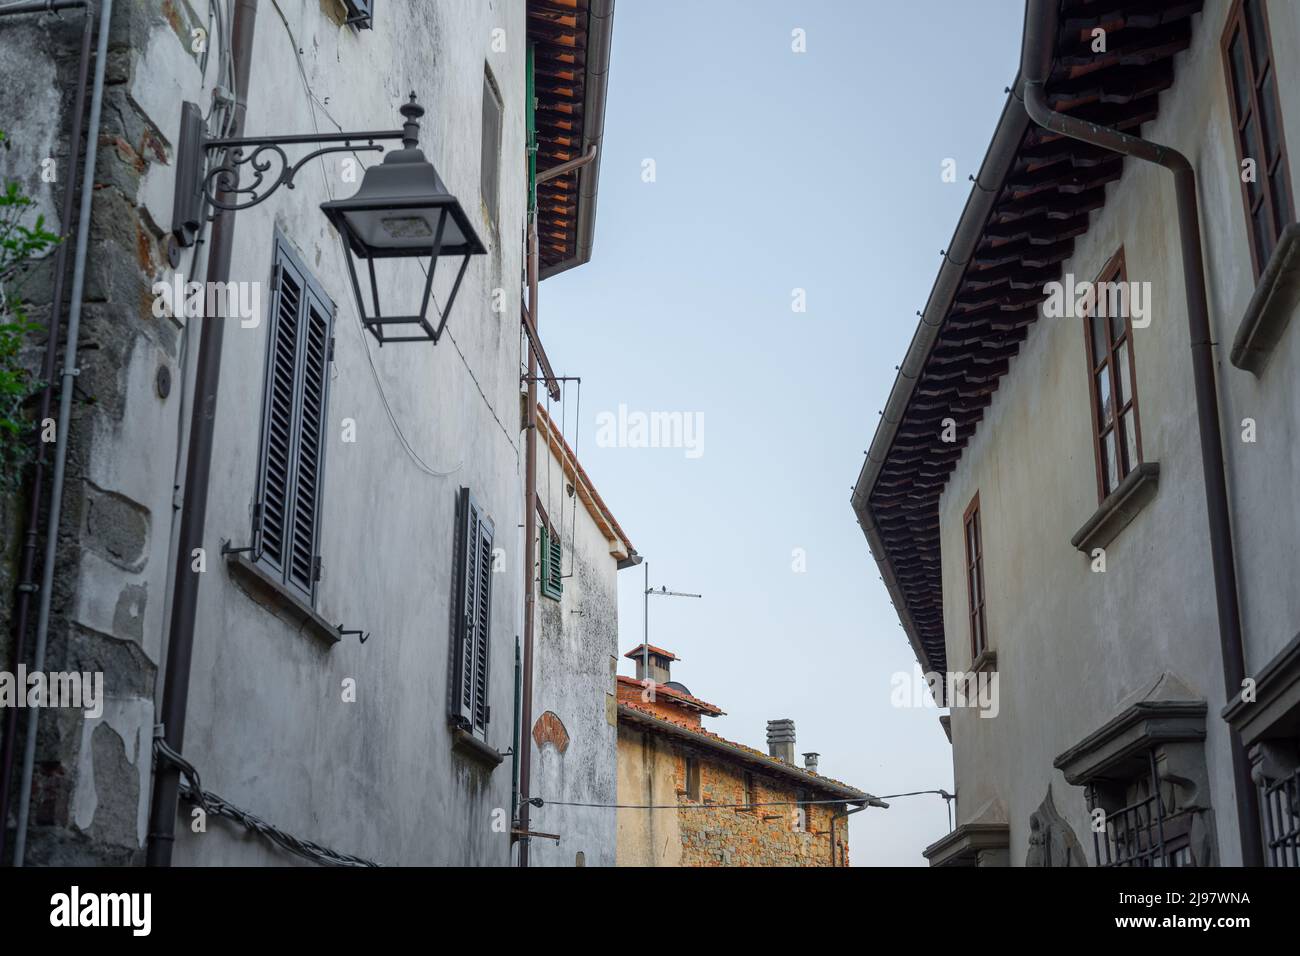 The village of Colle di Buggiano in 'Svizzera Pesciatina' Tuscany, Italy Stock Photo